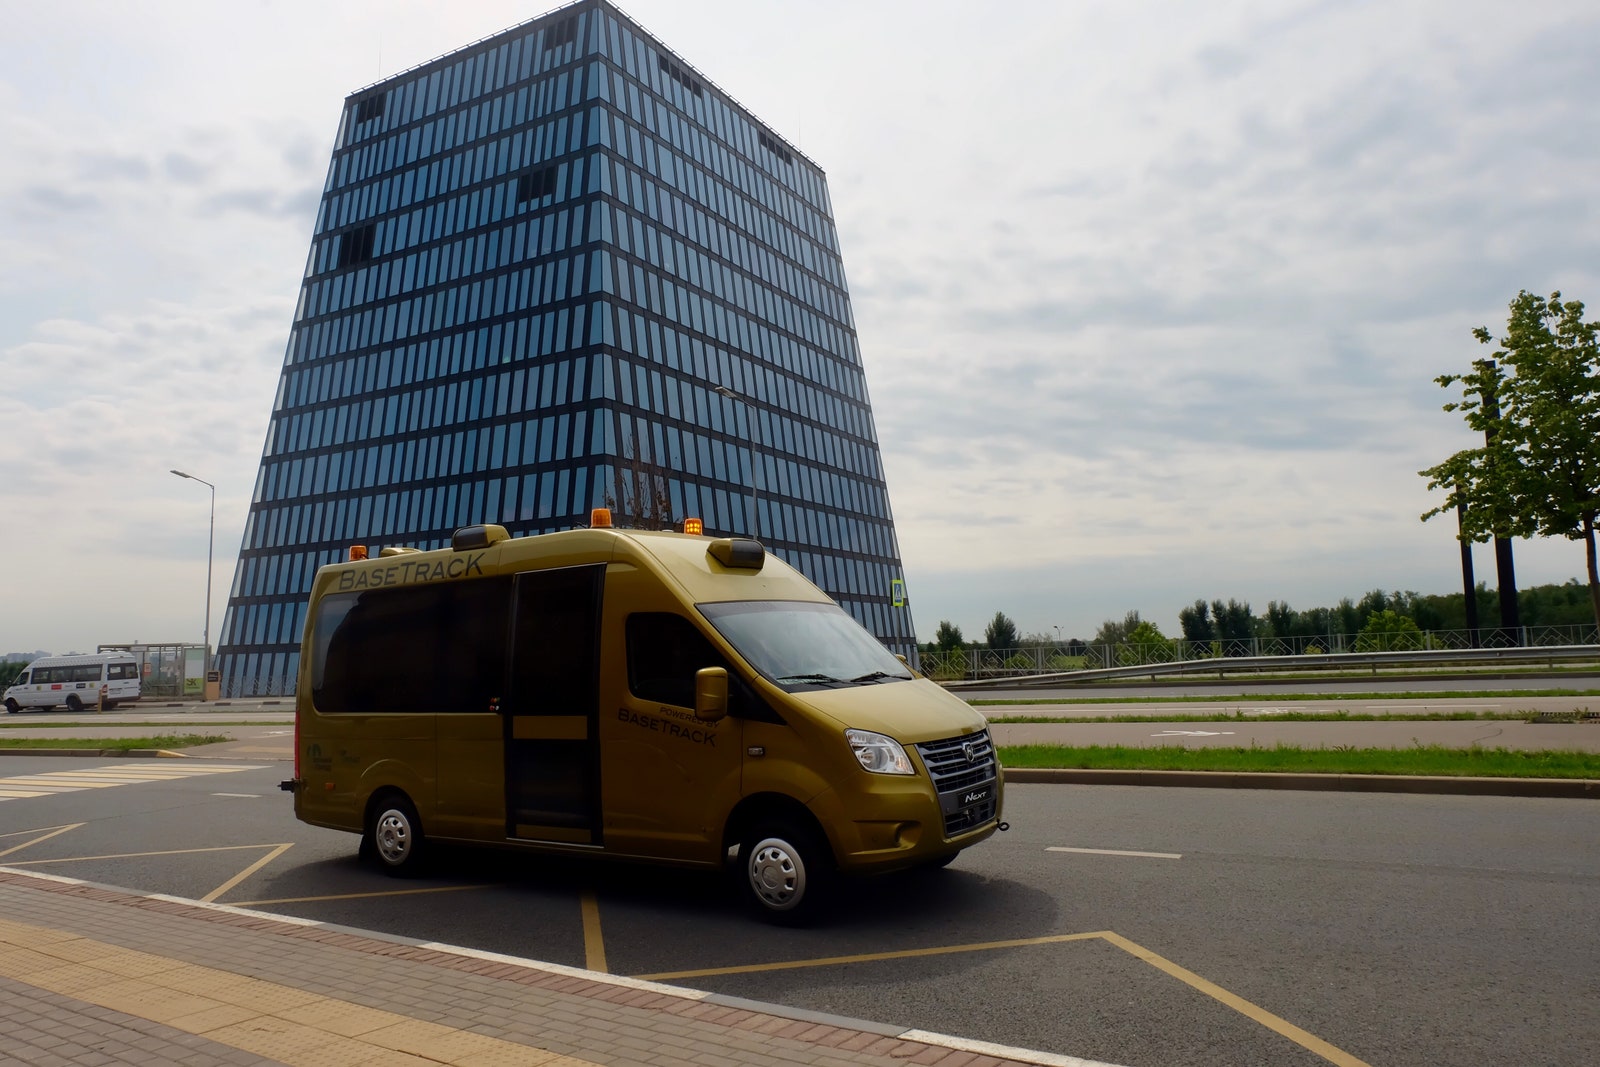 Российская компанияразработчик BaseTracK представила беспилотное маршрутное такси